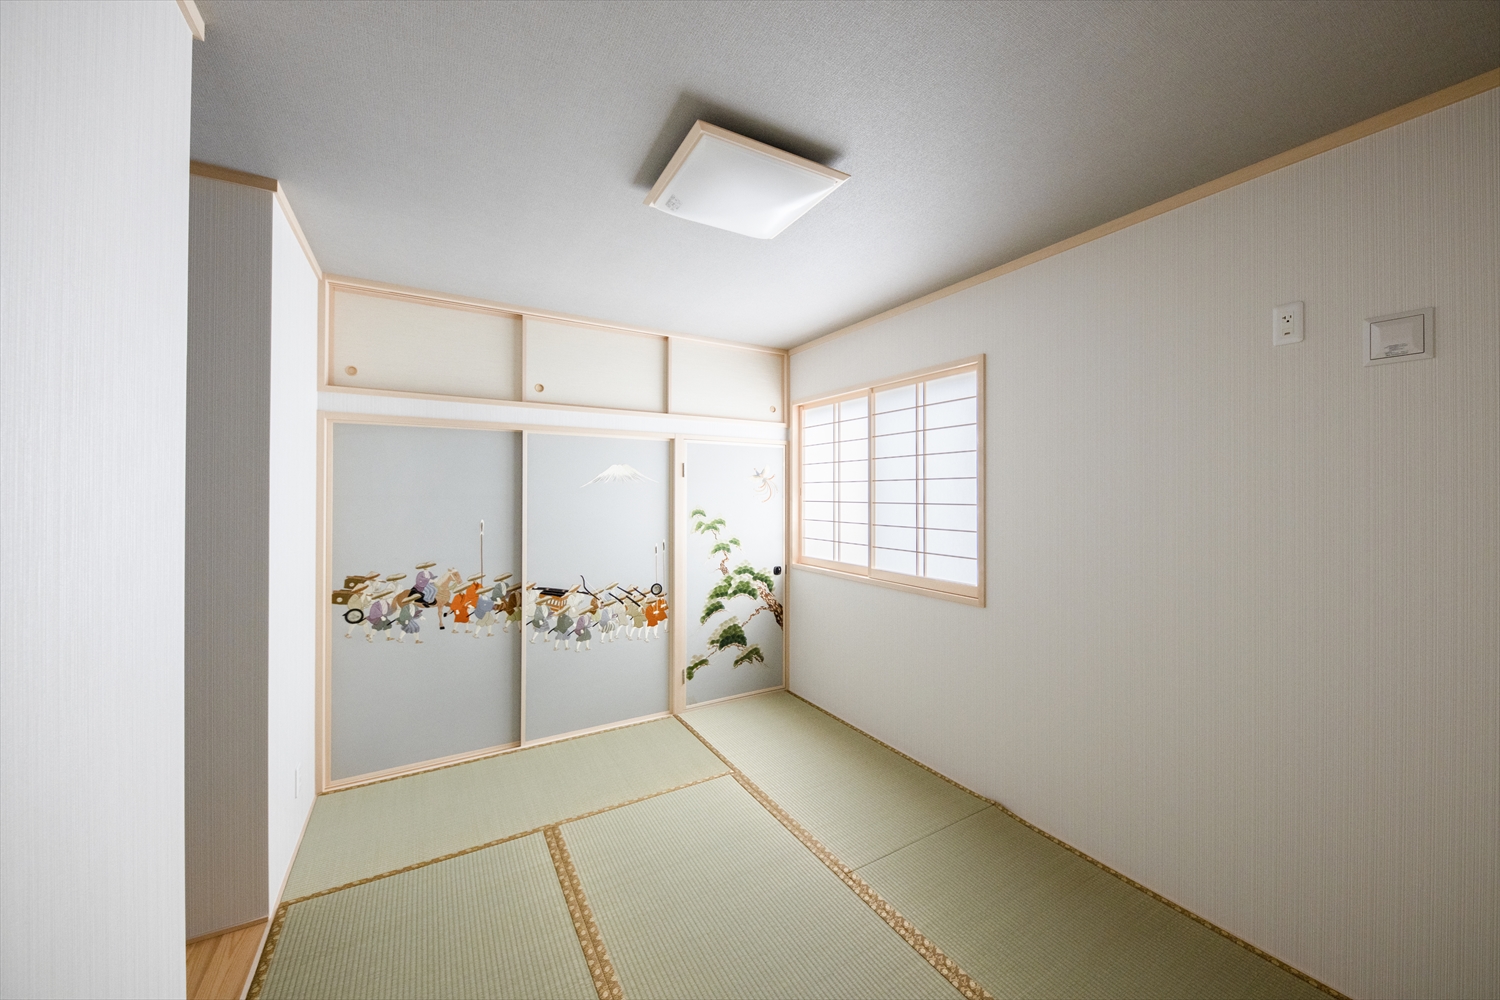 １階の小上がり和室とはまた違った印象の２階和室。白のクロスで爽やかに感じられる空間に。